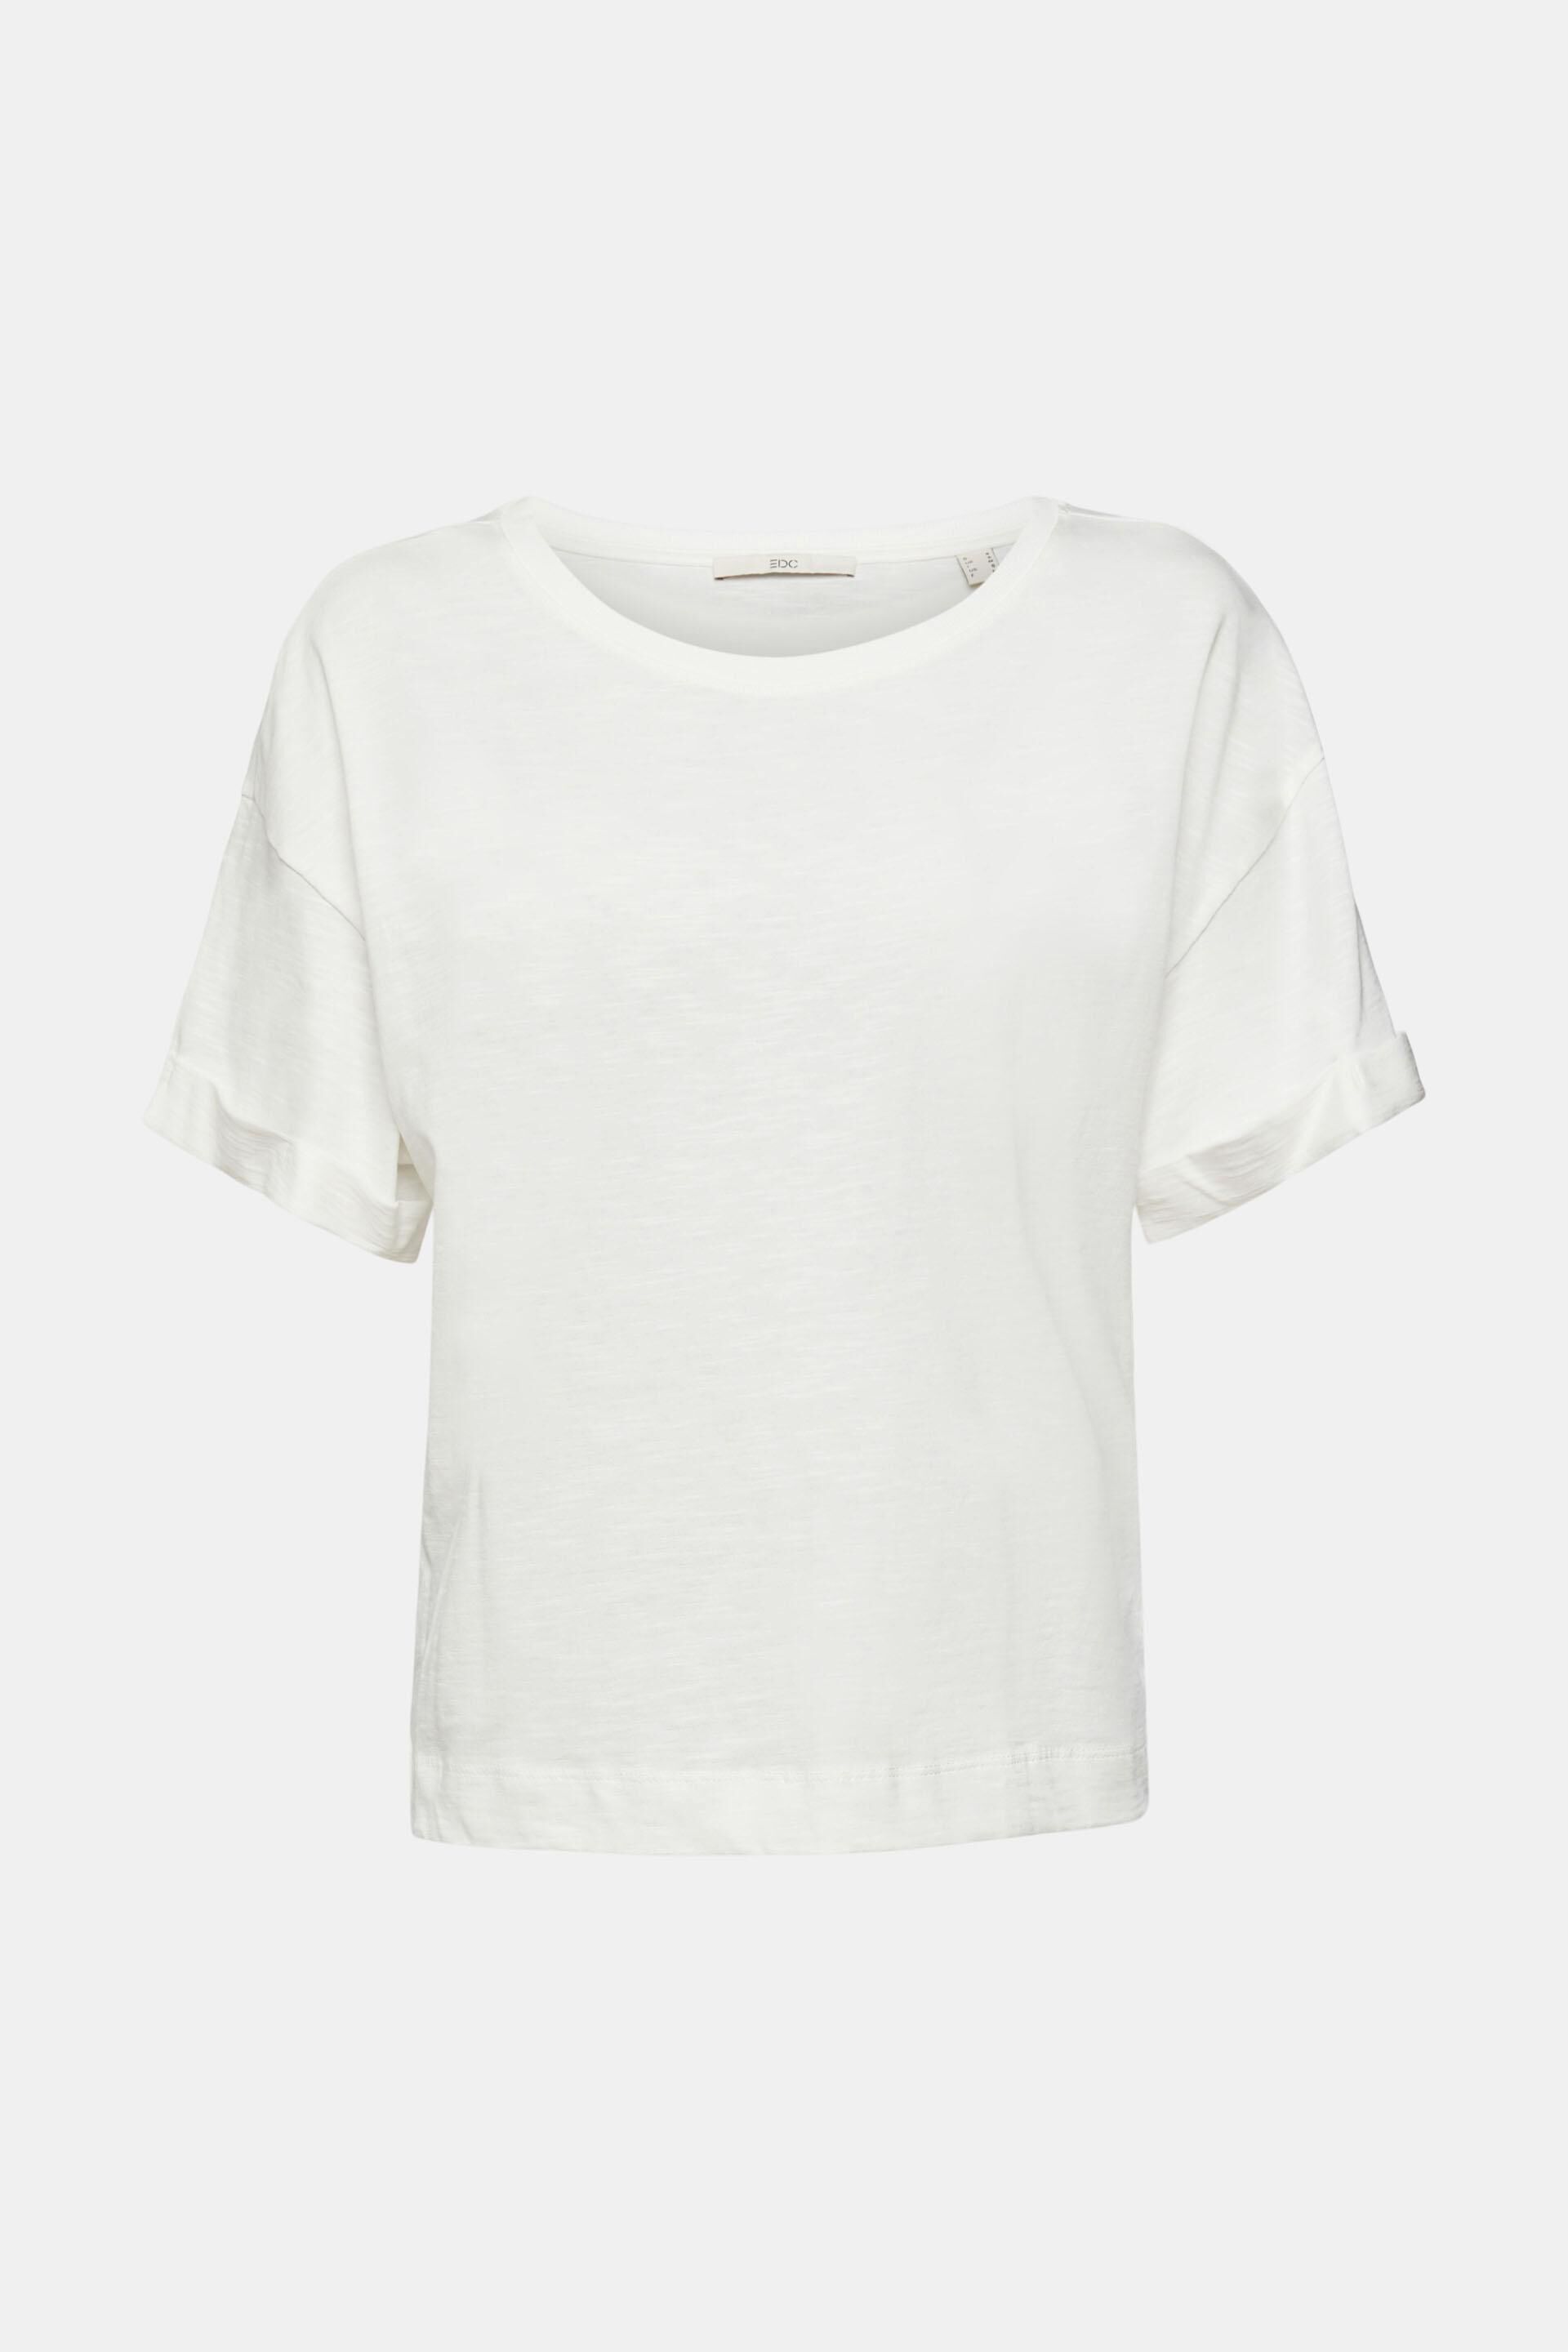 Damen Kleidung Tops & T-Shirts T-Shirts Esprit T-Shirts L Shirt Gr 